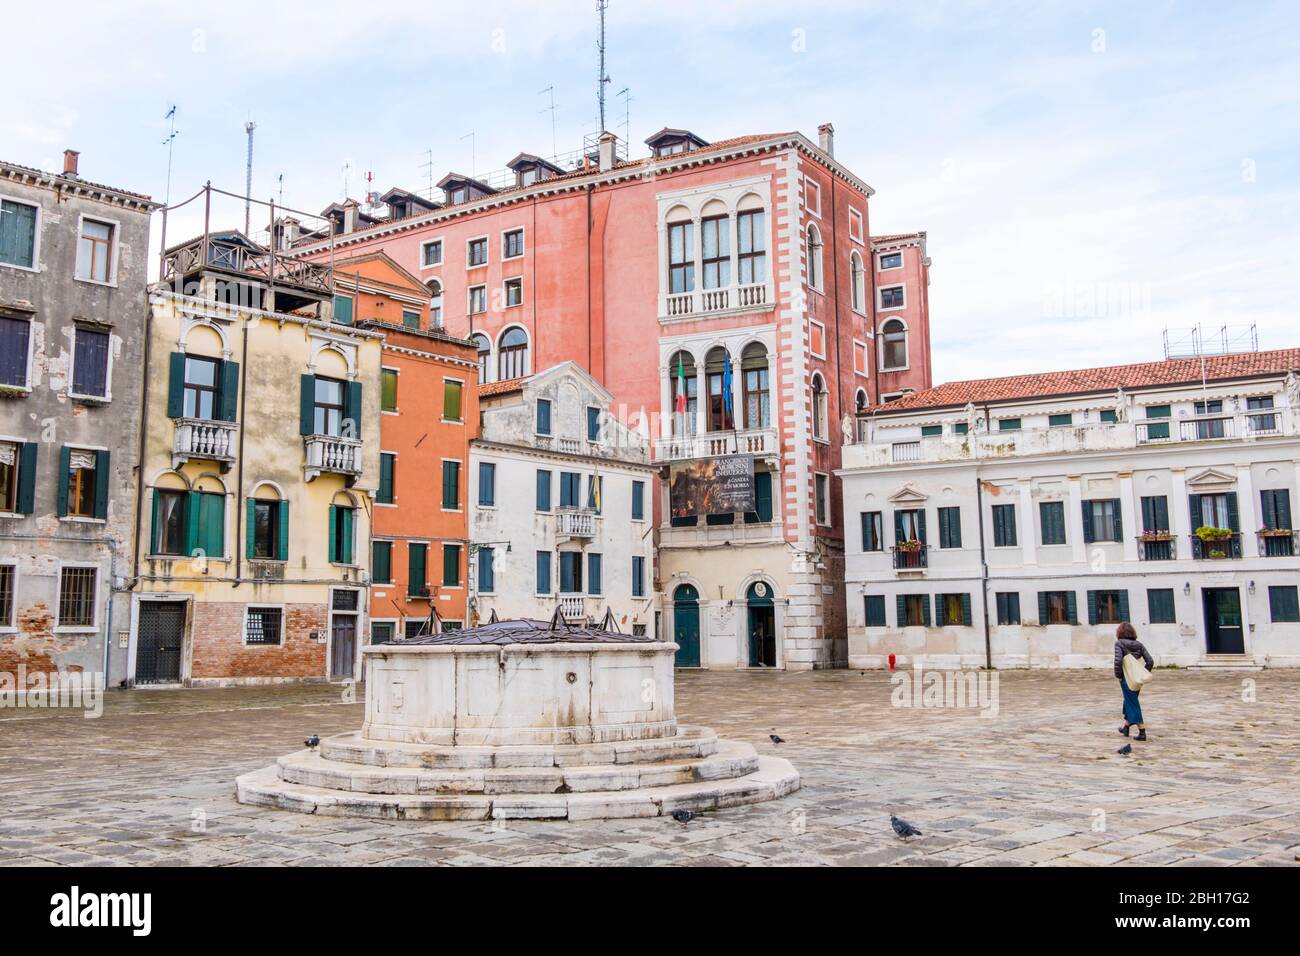 Campo San Polo, San Polo district, Venice, Italy Stock Photo